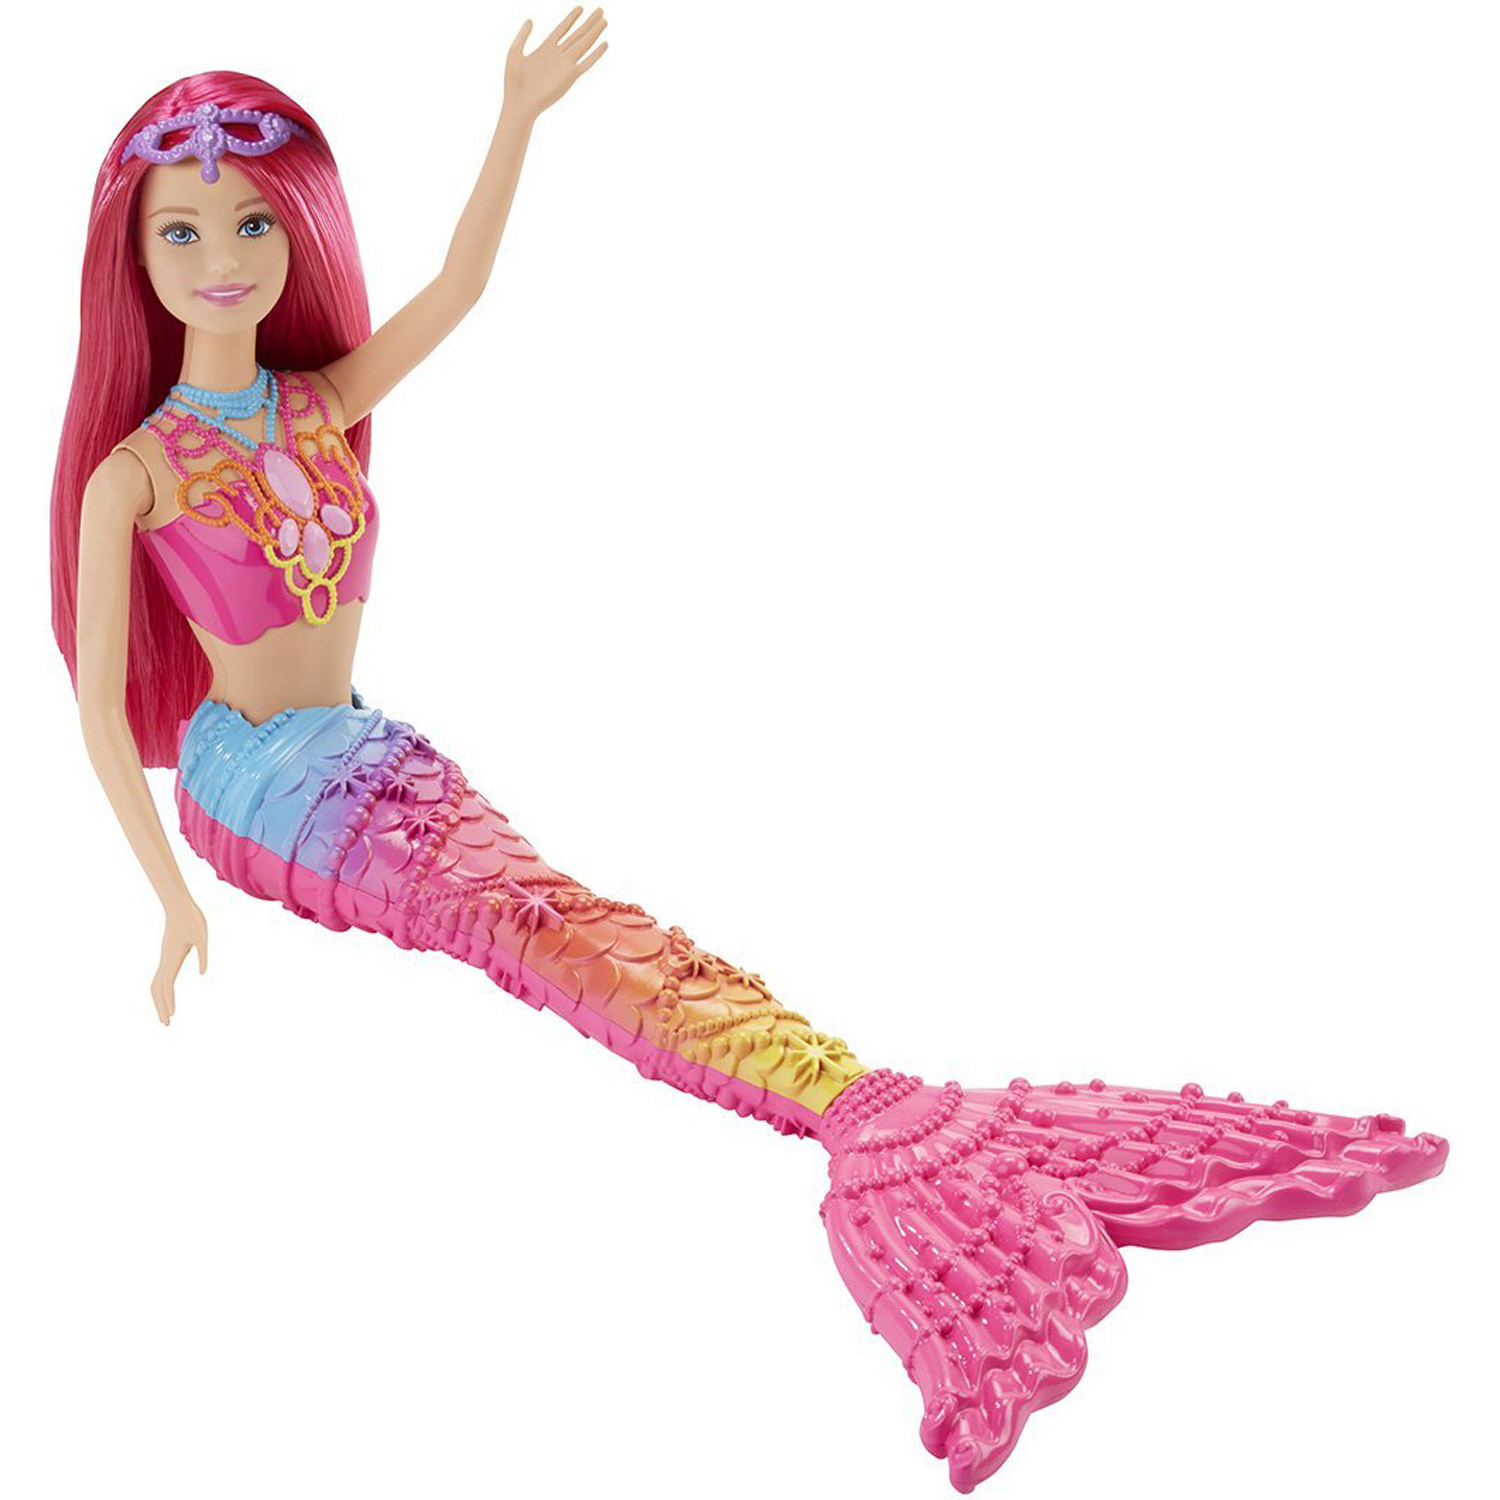 Barbie plage - Jeux et jouets Mattel - Avenue des Jeux